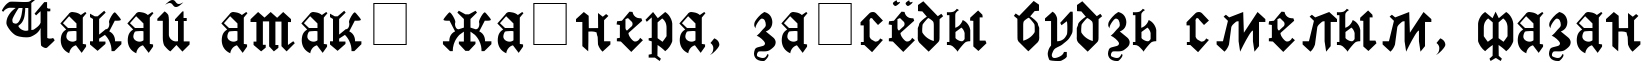 Пример написания шрифтом GothicRus Medium текста на белорусском